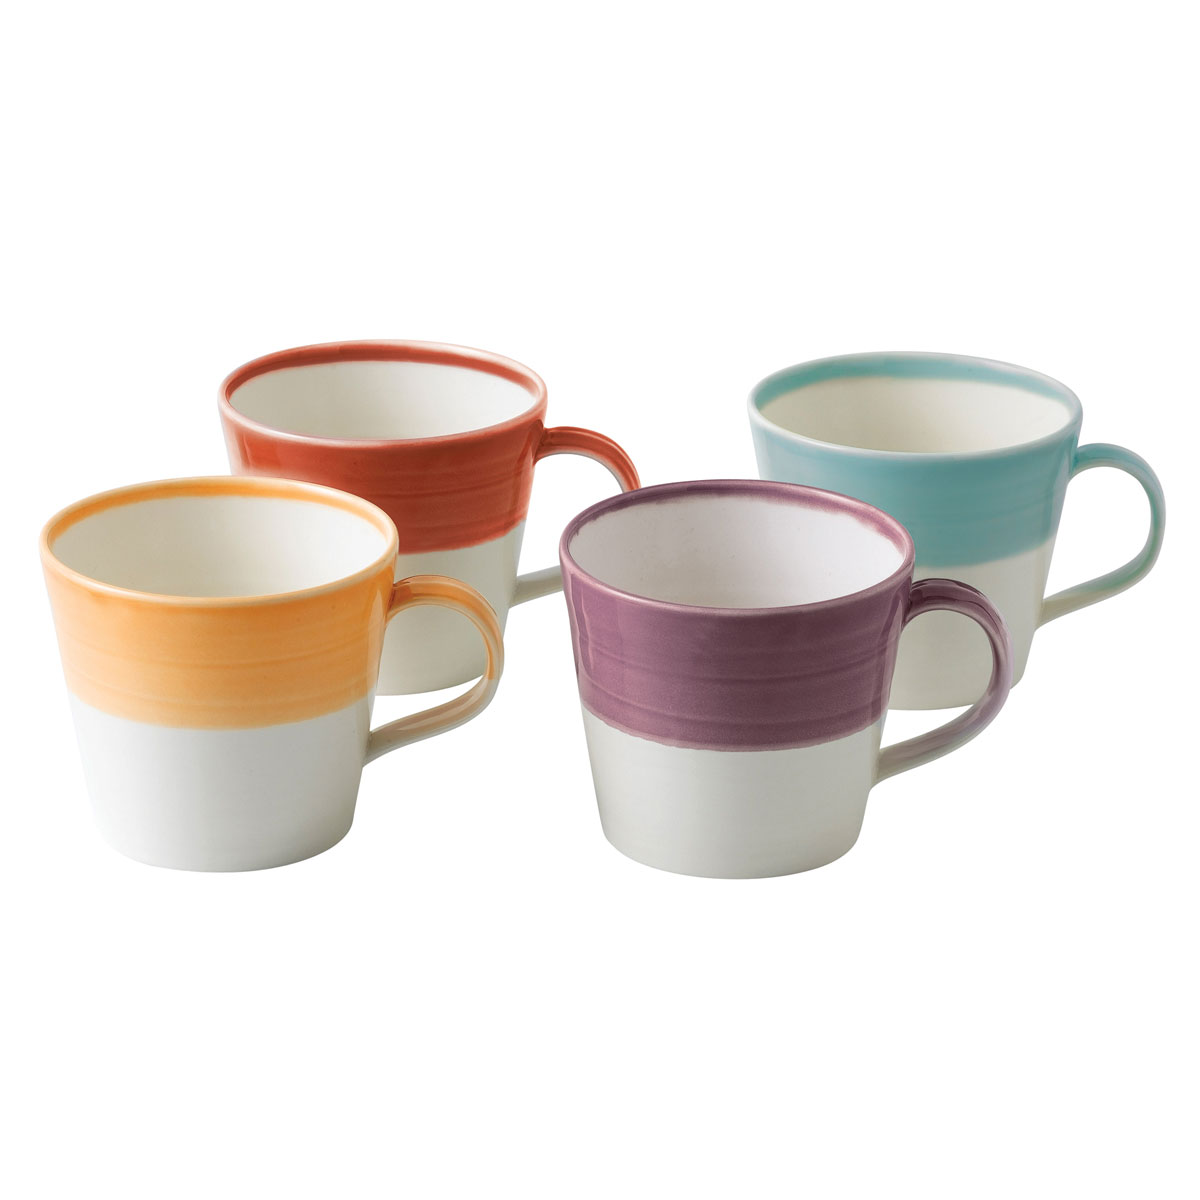 Royal Doulton 1815 Mixed Patterns Mug Set of 4 Bright Colors